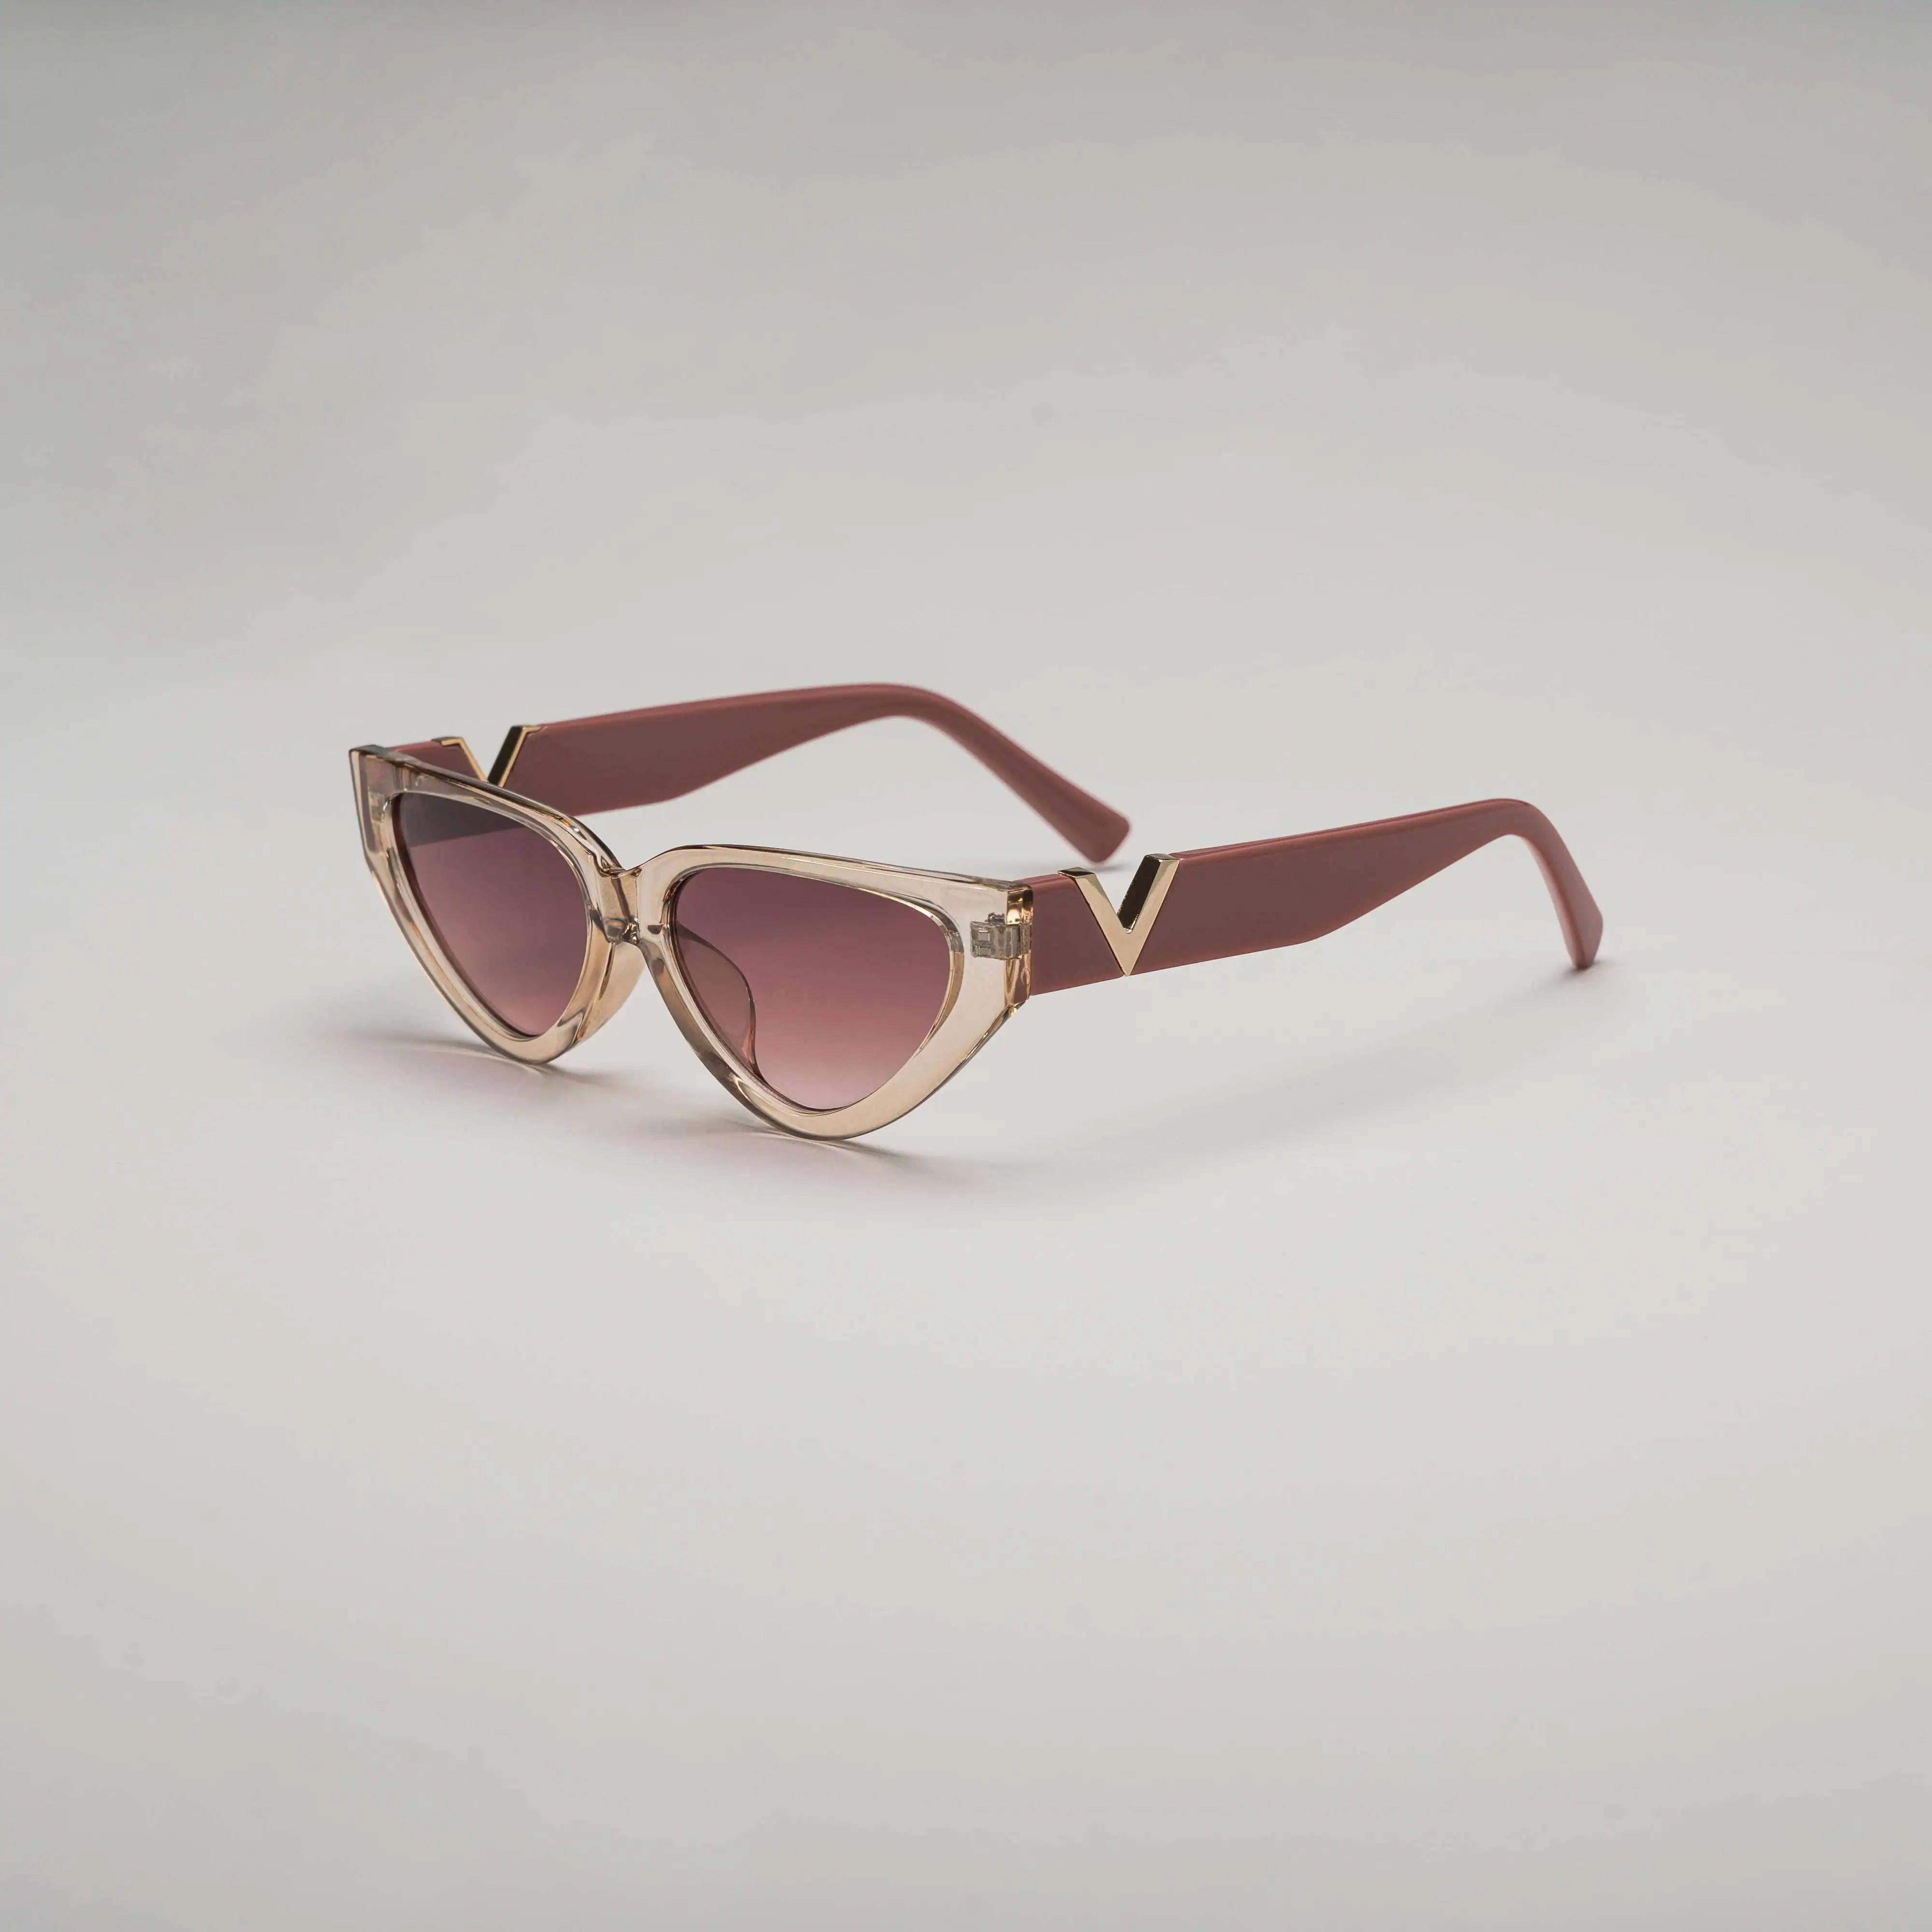 'Cola' Retro Sunglasses in Brown & Gold